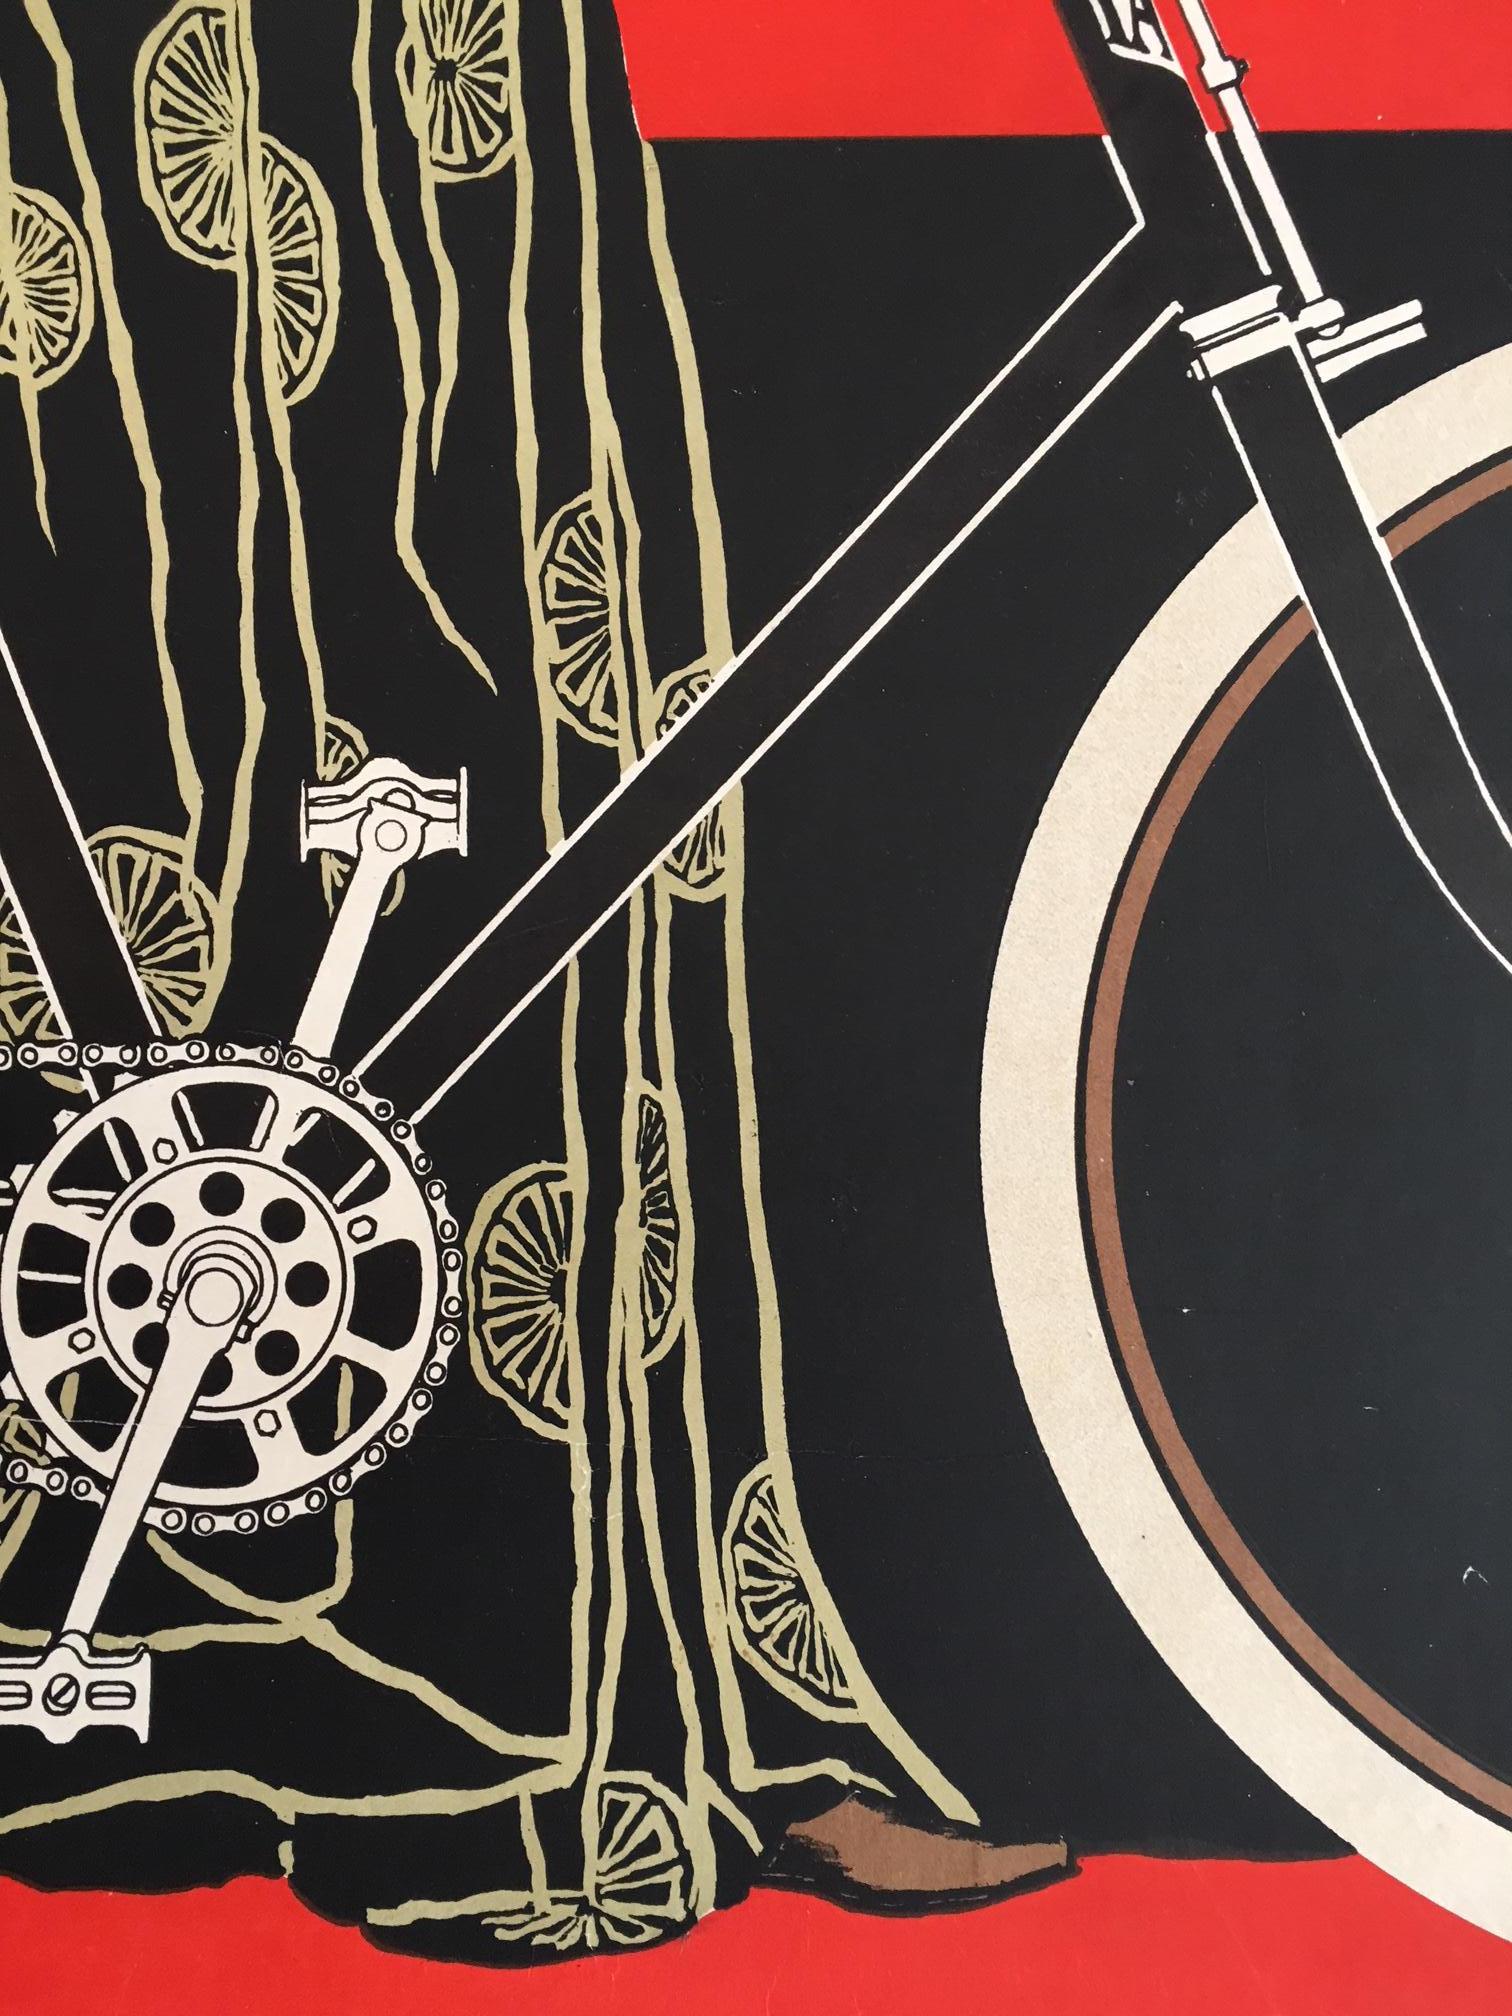 vintage bicycle posters original